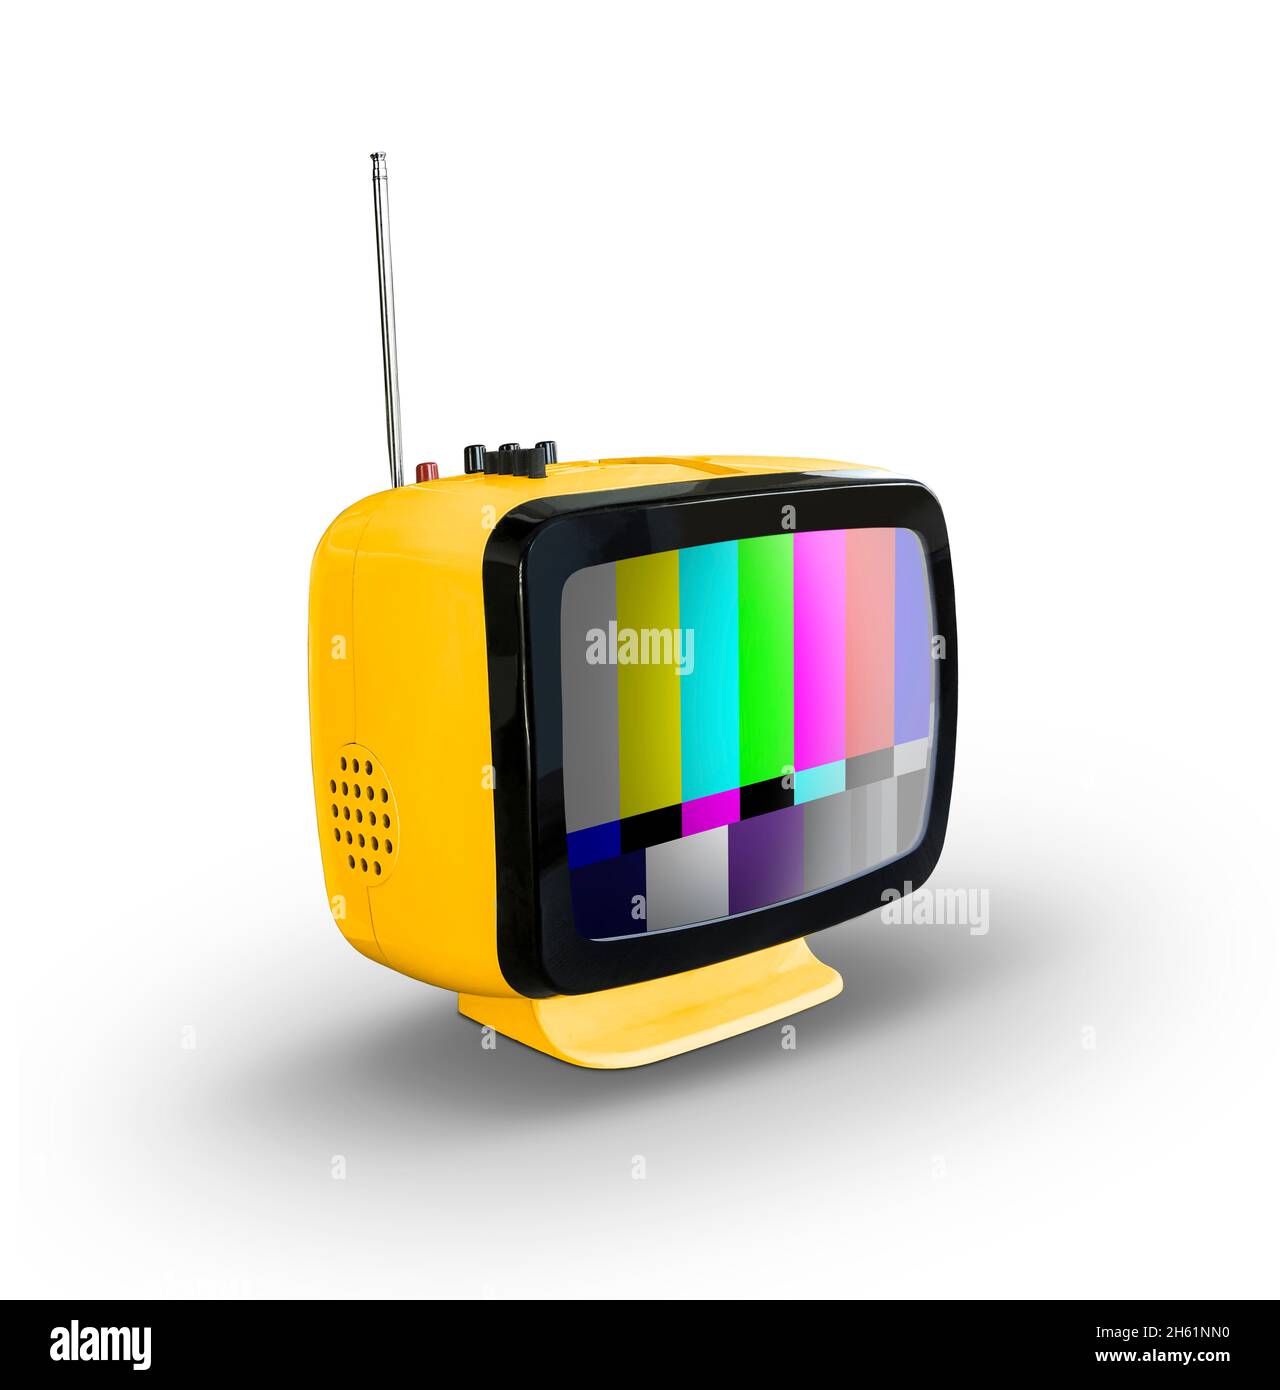 Televisione retrò gialla isolata su sfondo bianco Foto Stock